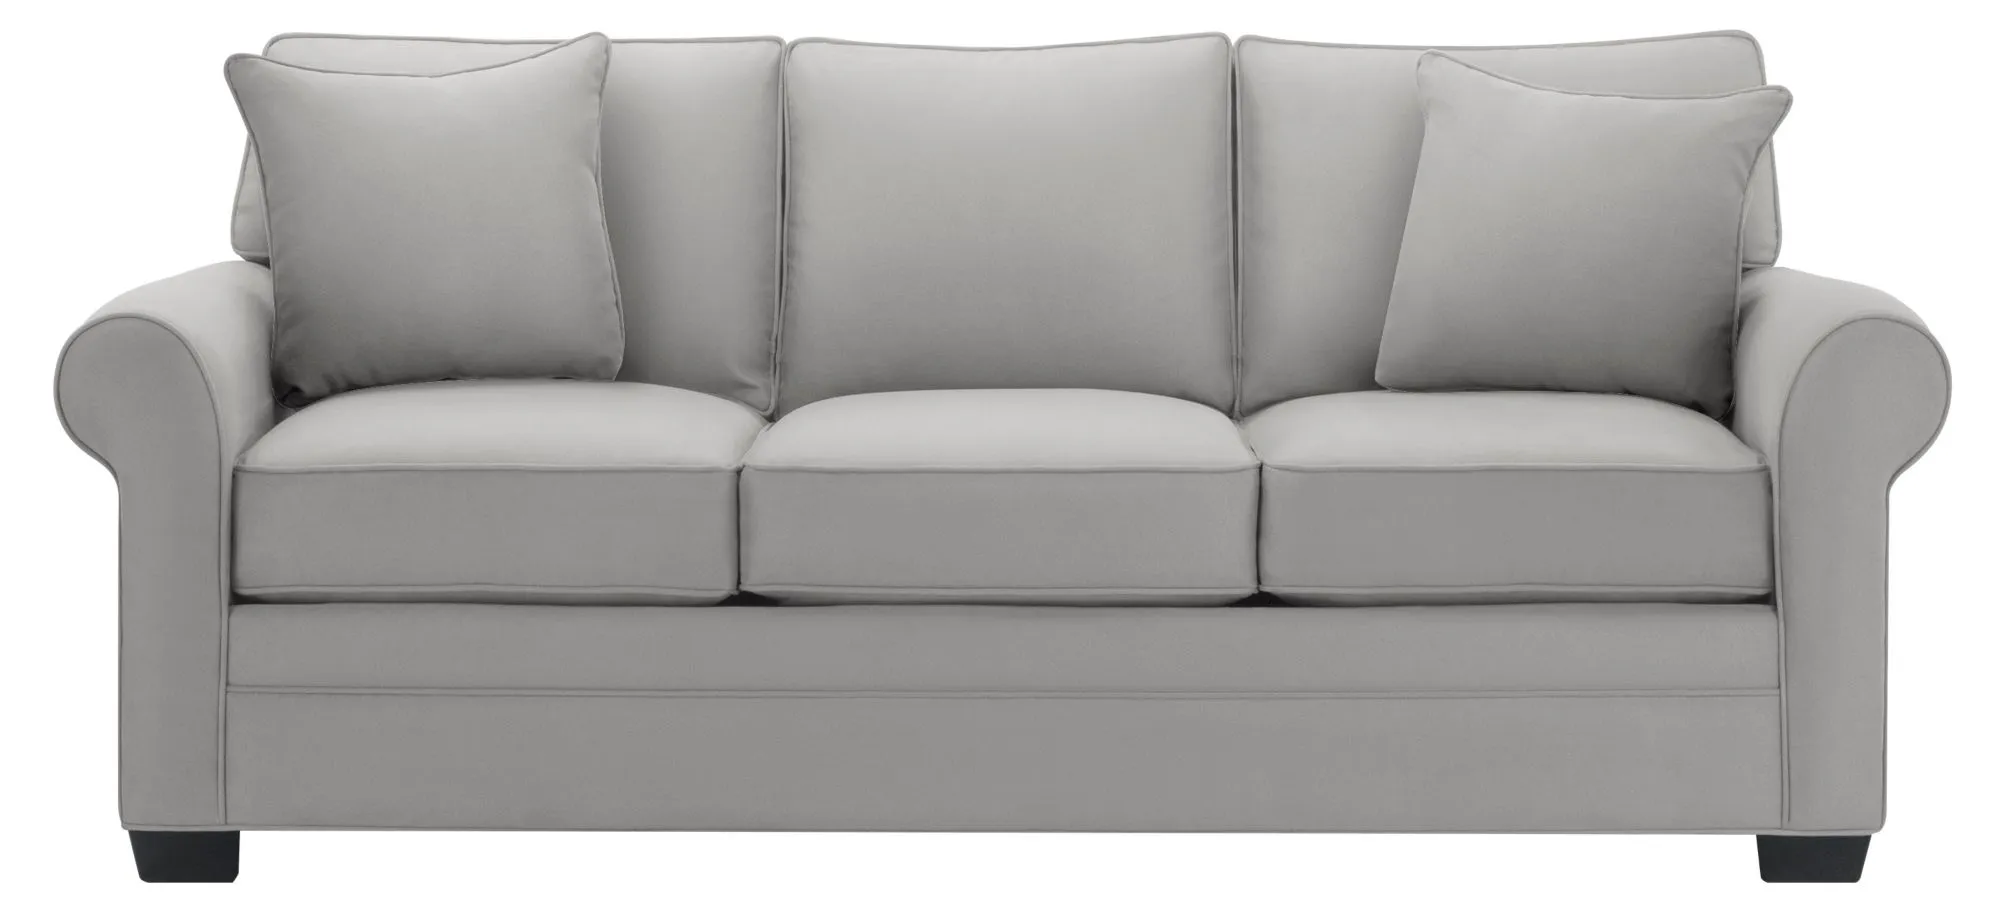 Glendora Queen Sleeper Sofa in Suede So Soft Platinum by H.M. Richards